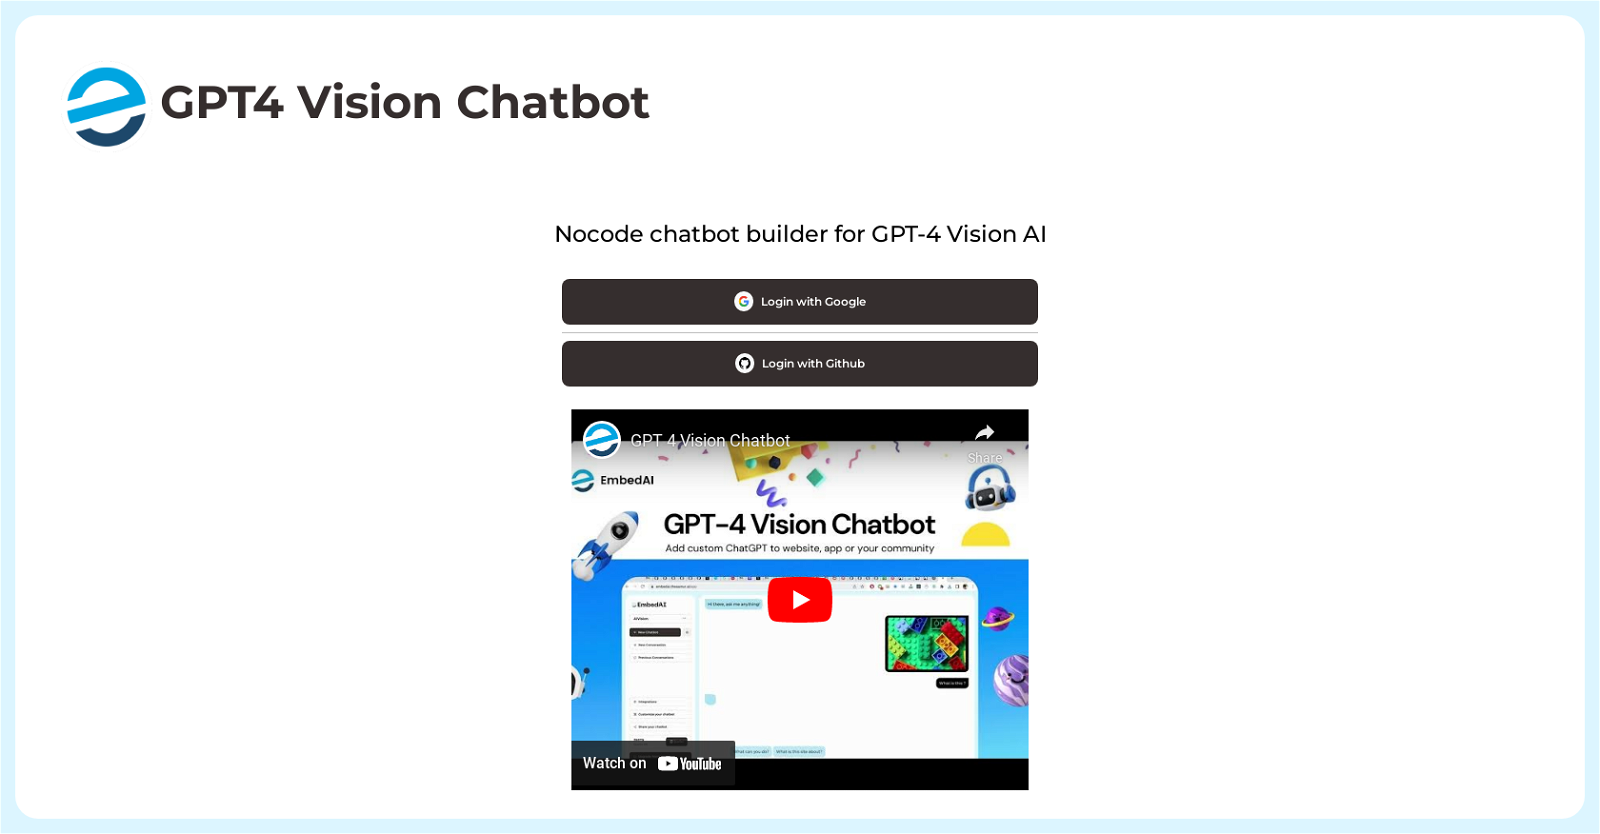 GPT4 Vision Chatbot website